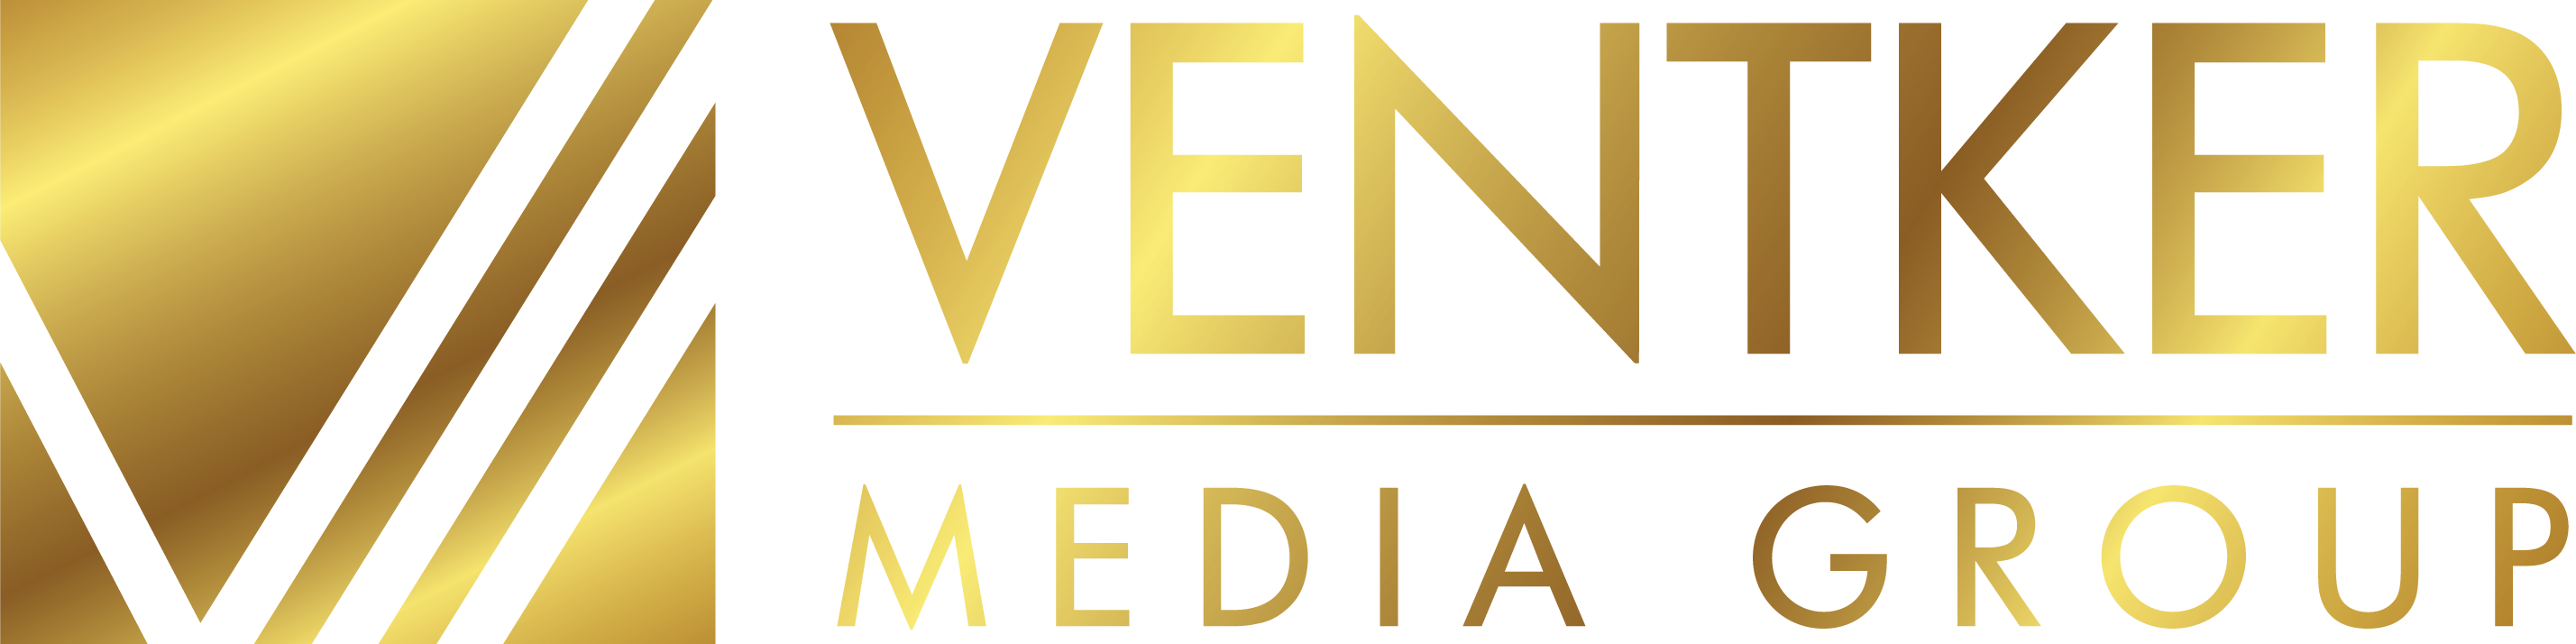 Ventker Media Group